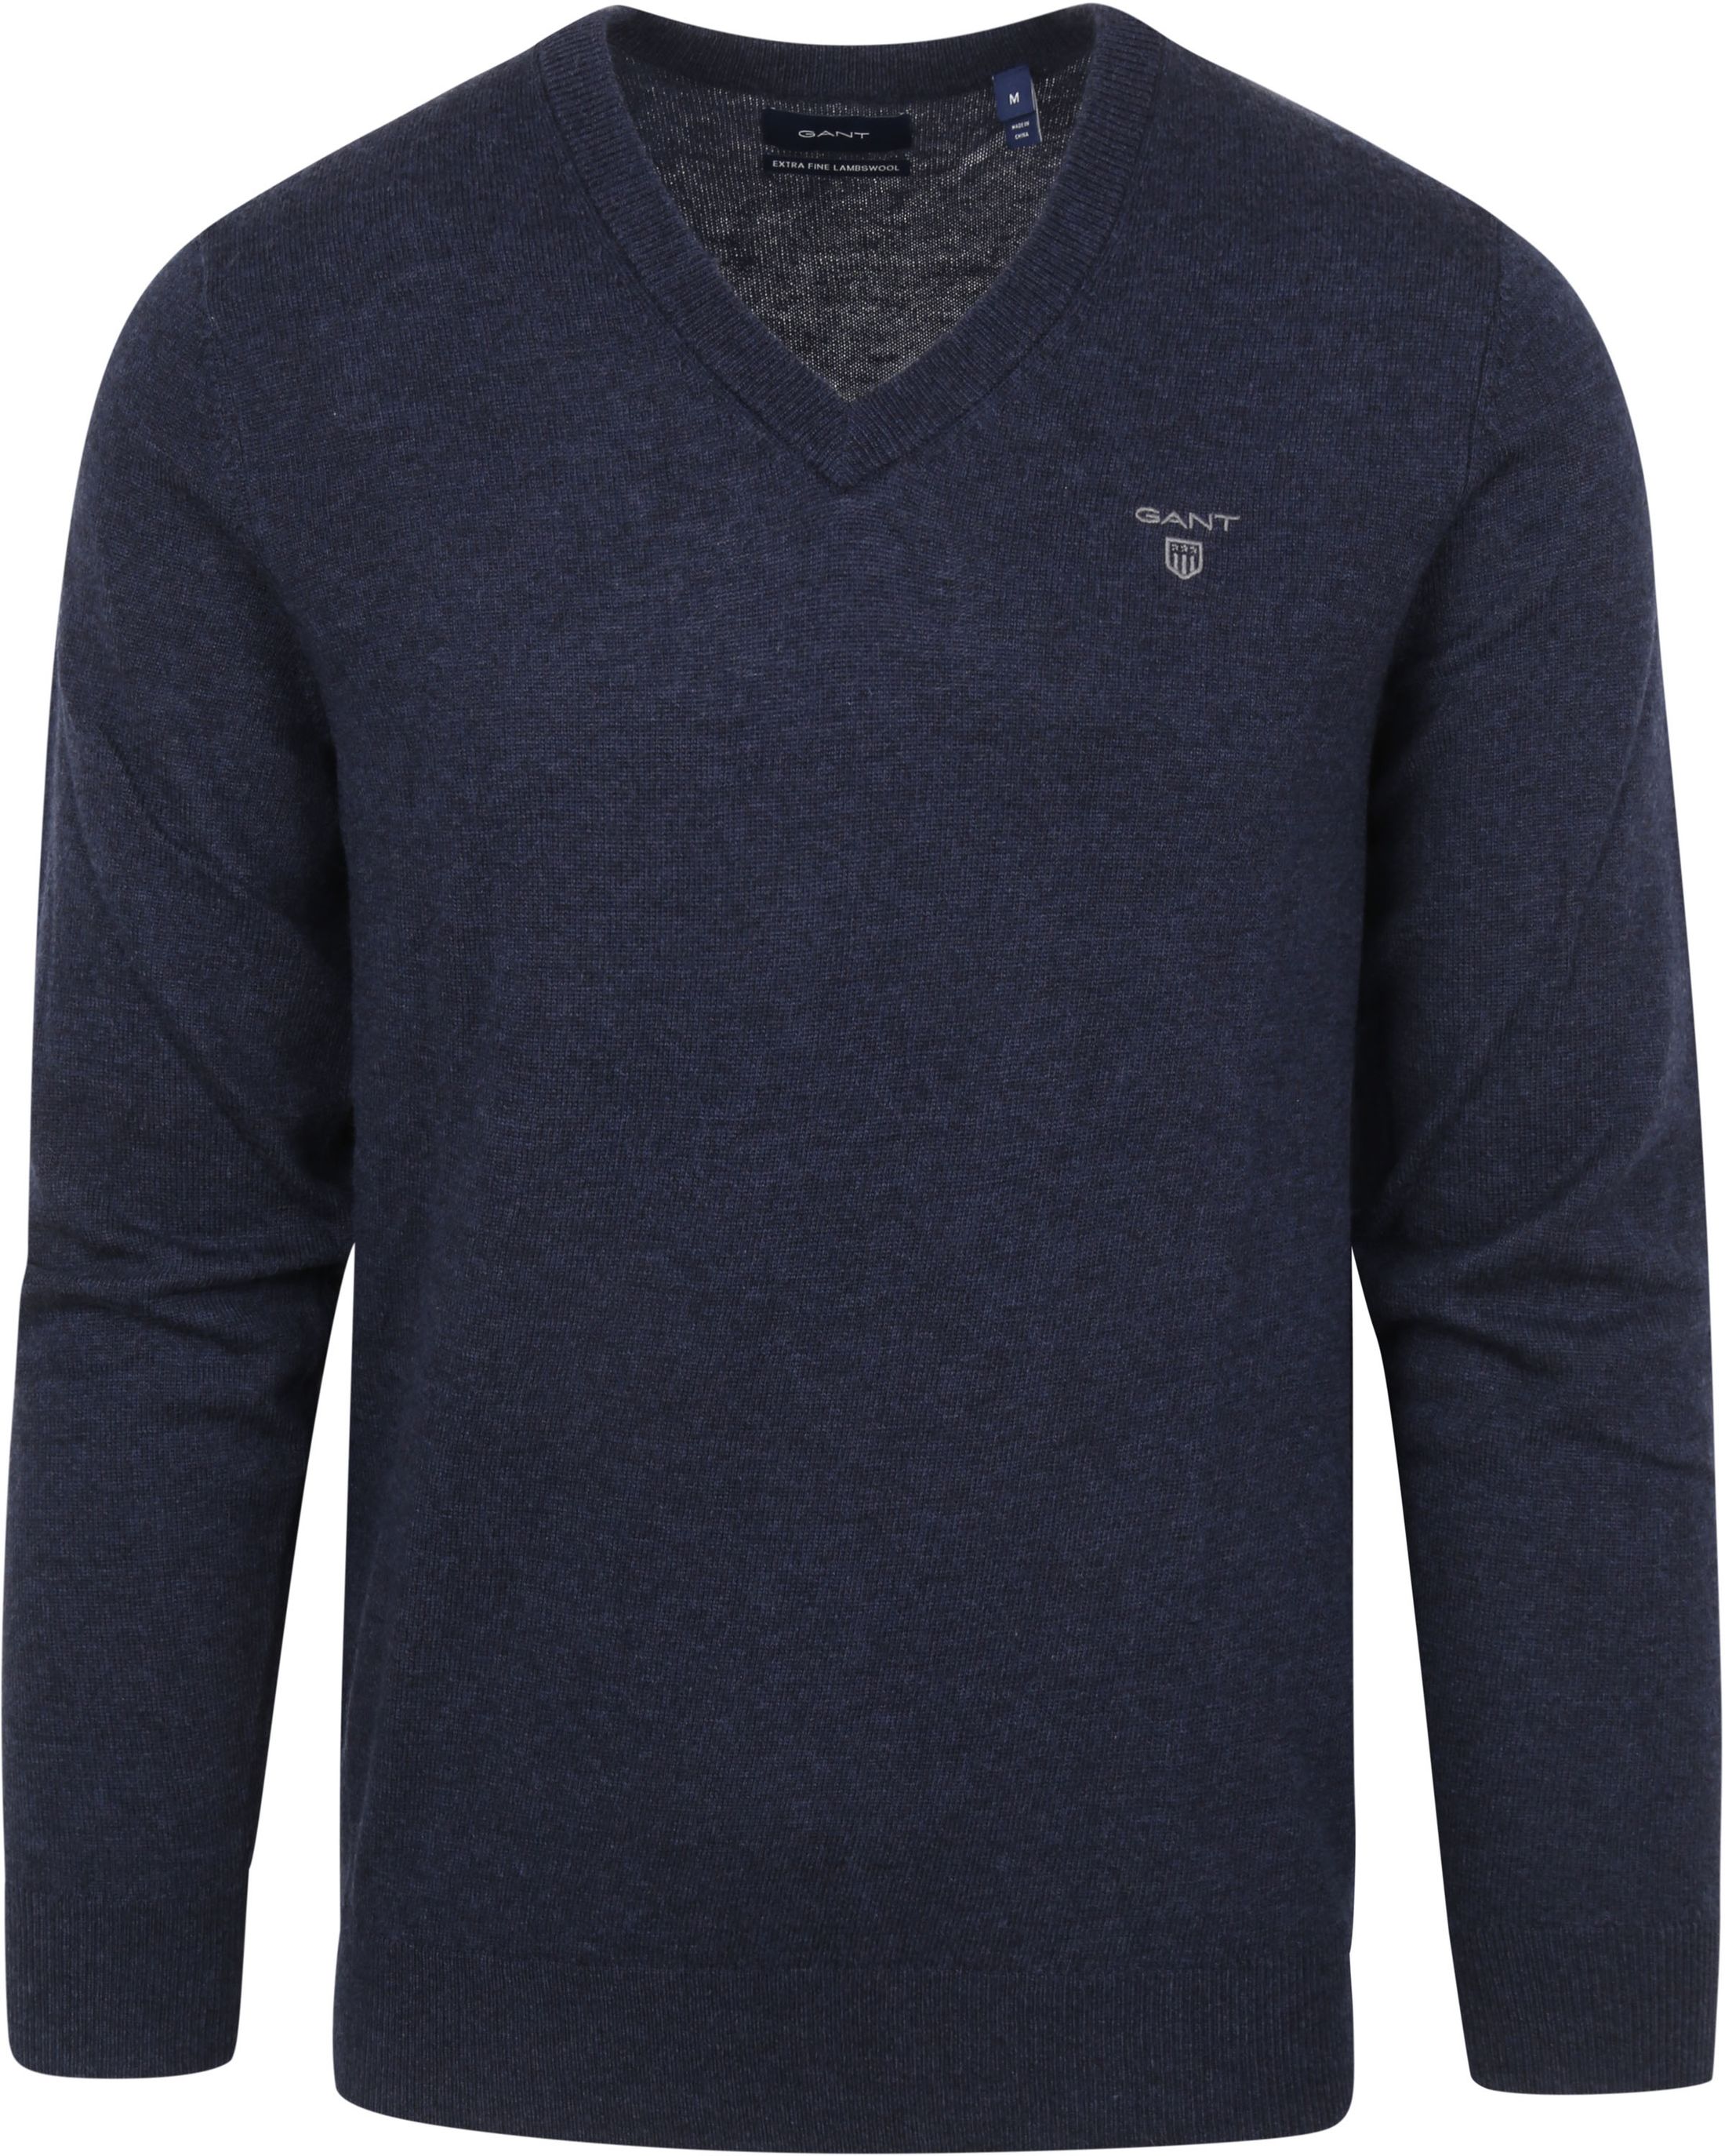 Gant Sweater Lambswool Dark Blue Dark Blue size M